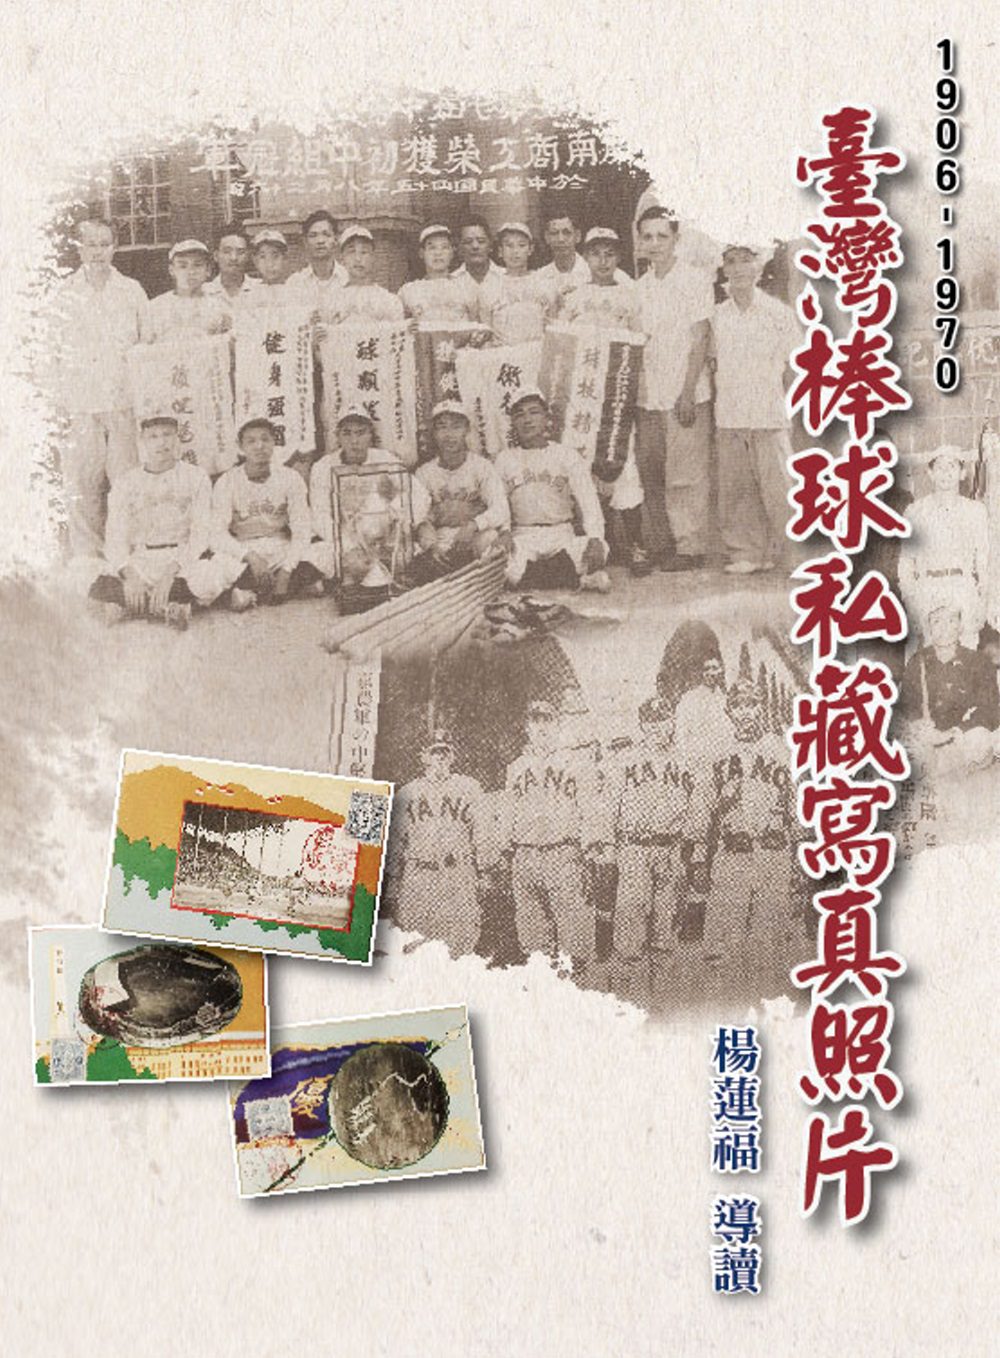 臺灣棒球私藏寫真照片(1906-1970)